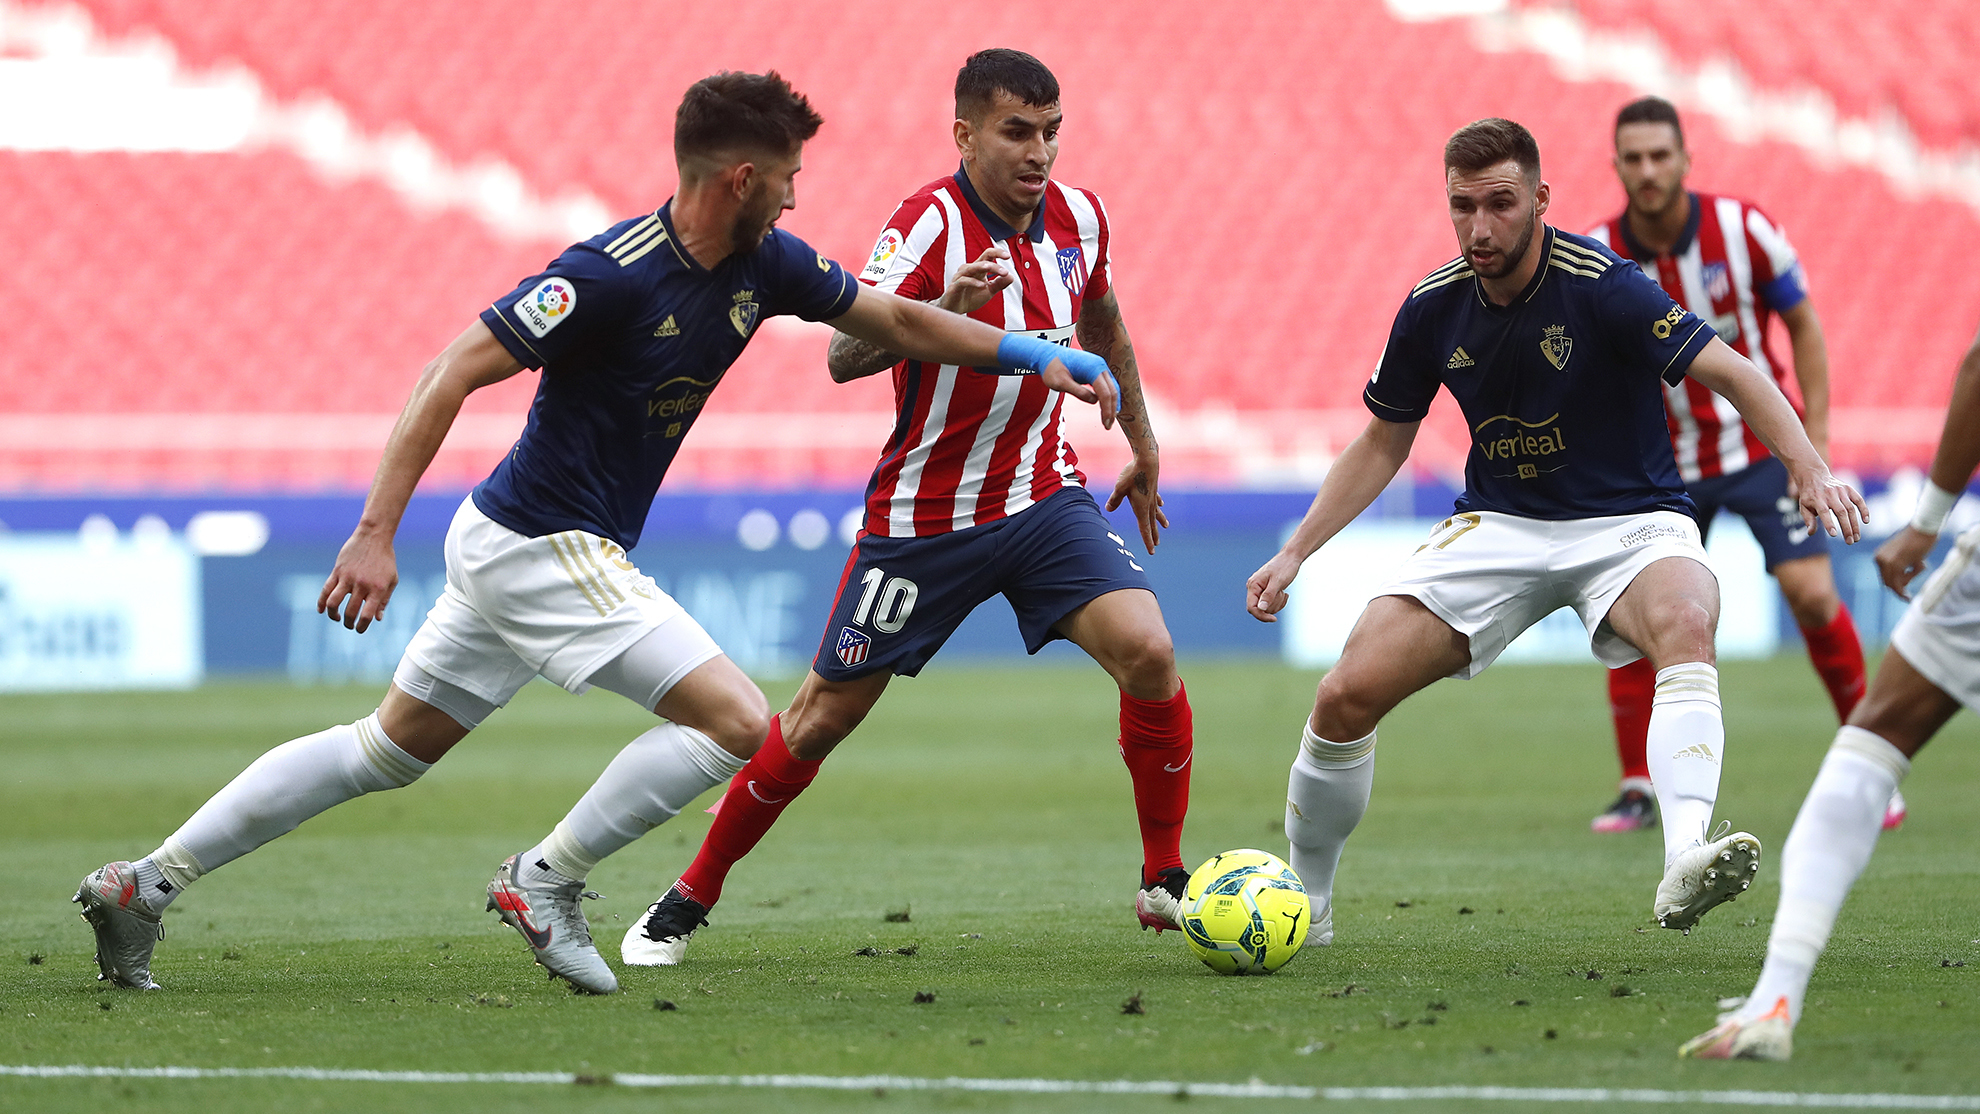 La temporada pasada el Atlético remontó a Osasuna (2-1) en los últimos 10 minutos de partido.